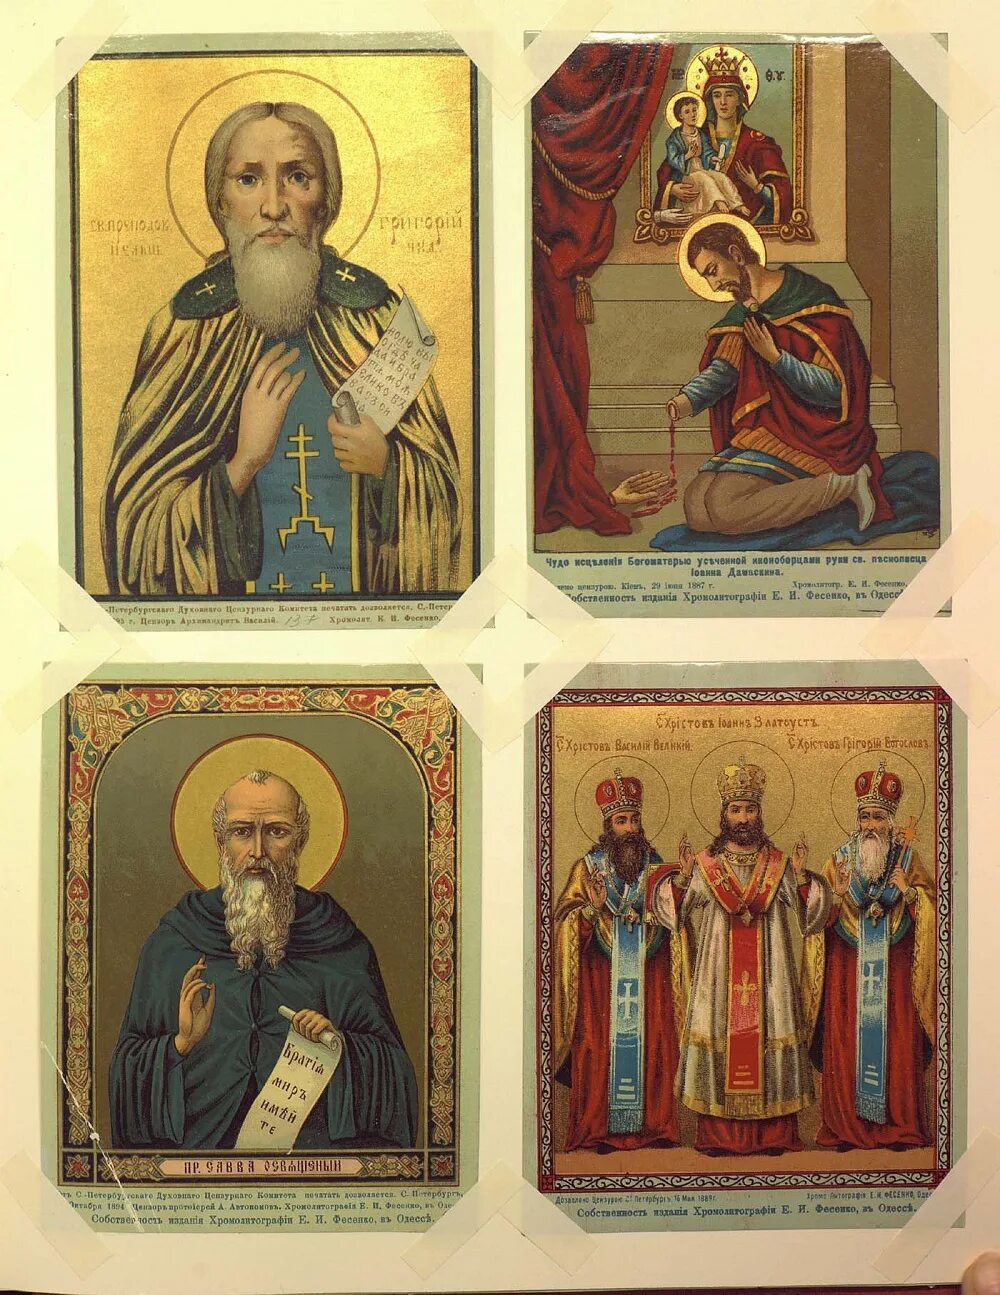 Иконы хромолитография Фесенко. Образы святых на иконах.